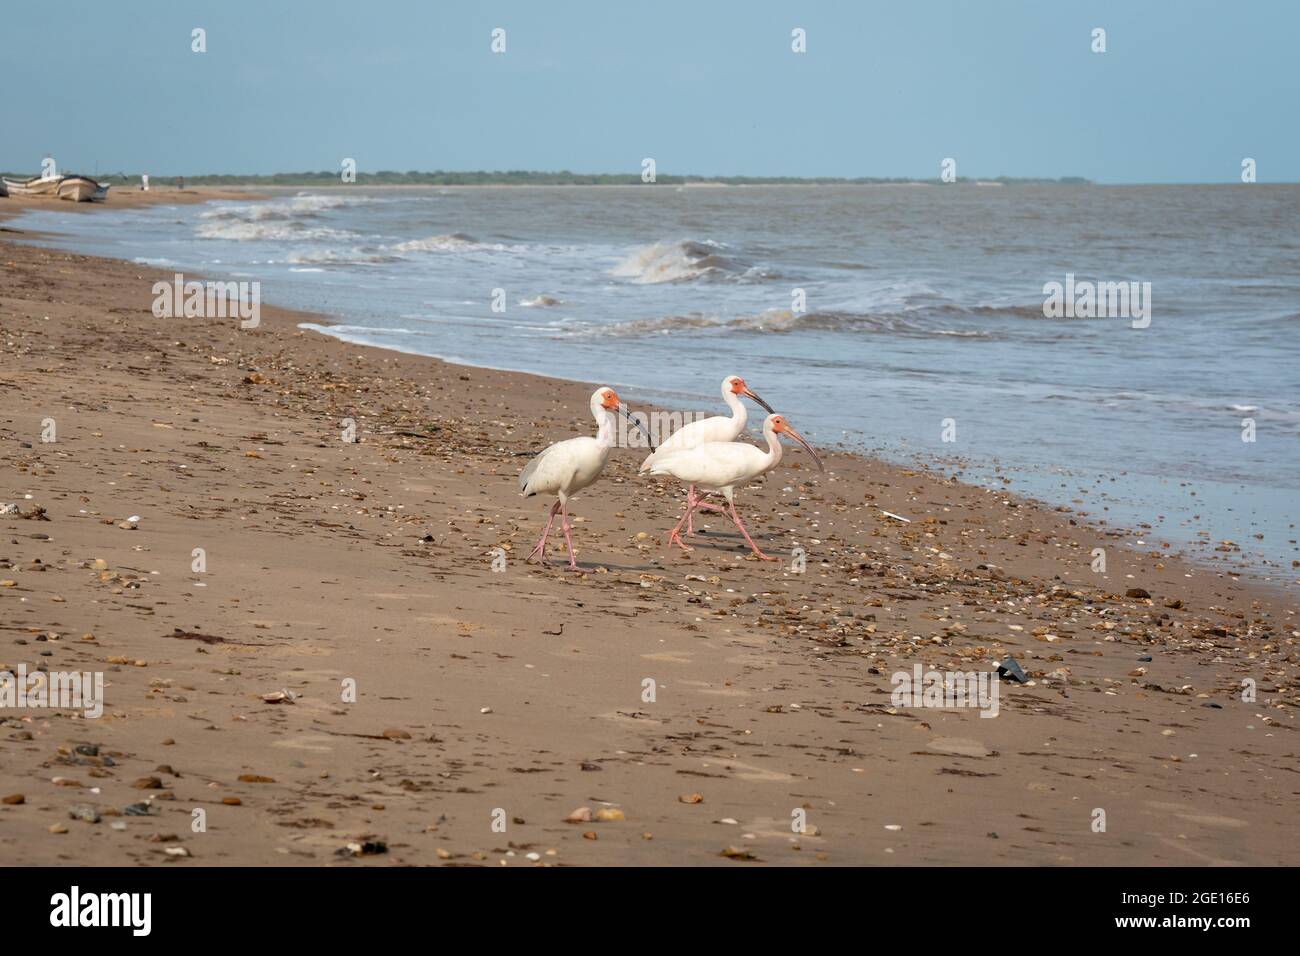 El American White Ibis (Eudocimus albus) está caminando por la arena junto a la orilla para entrar al mar Foto de stock